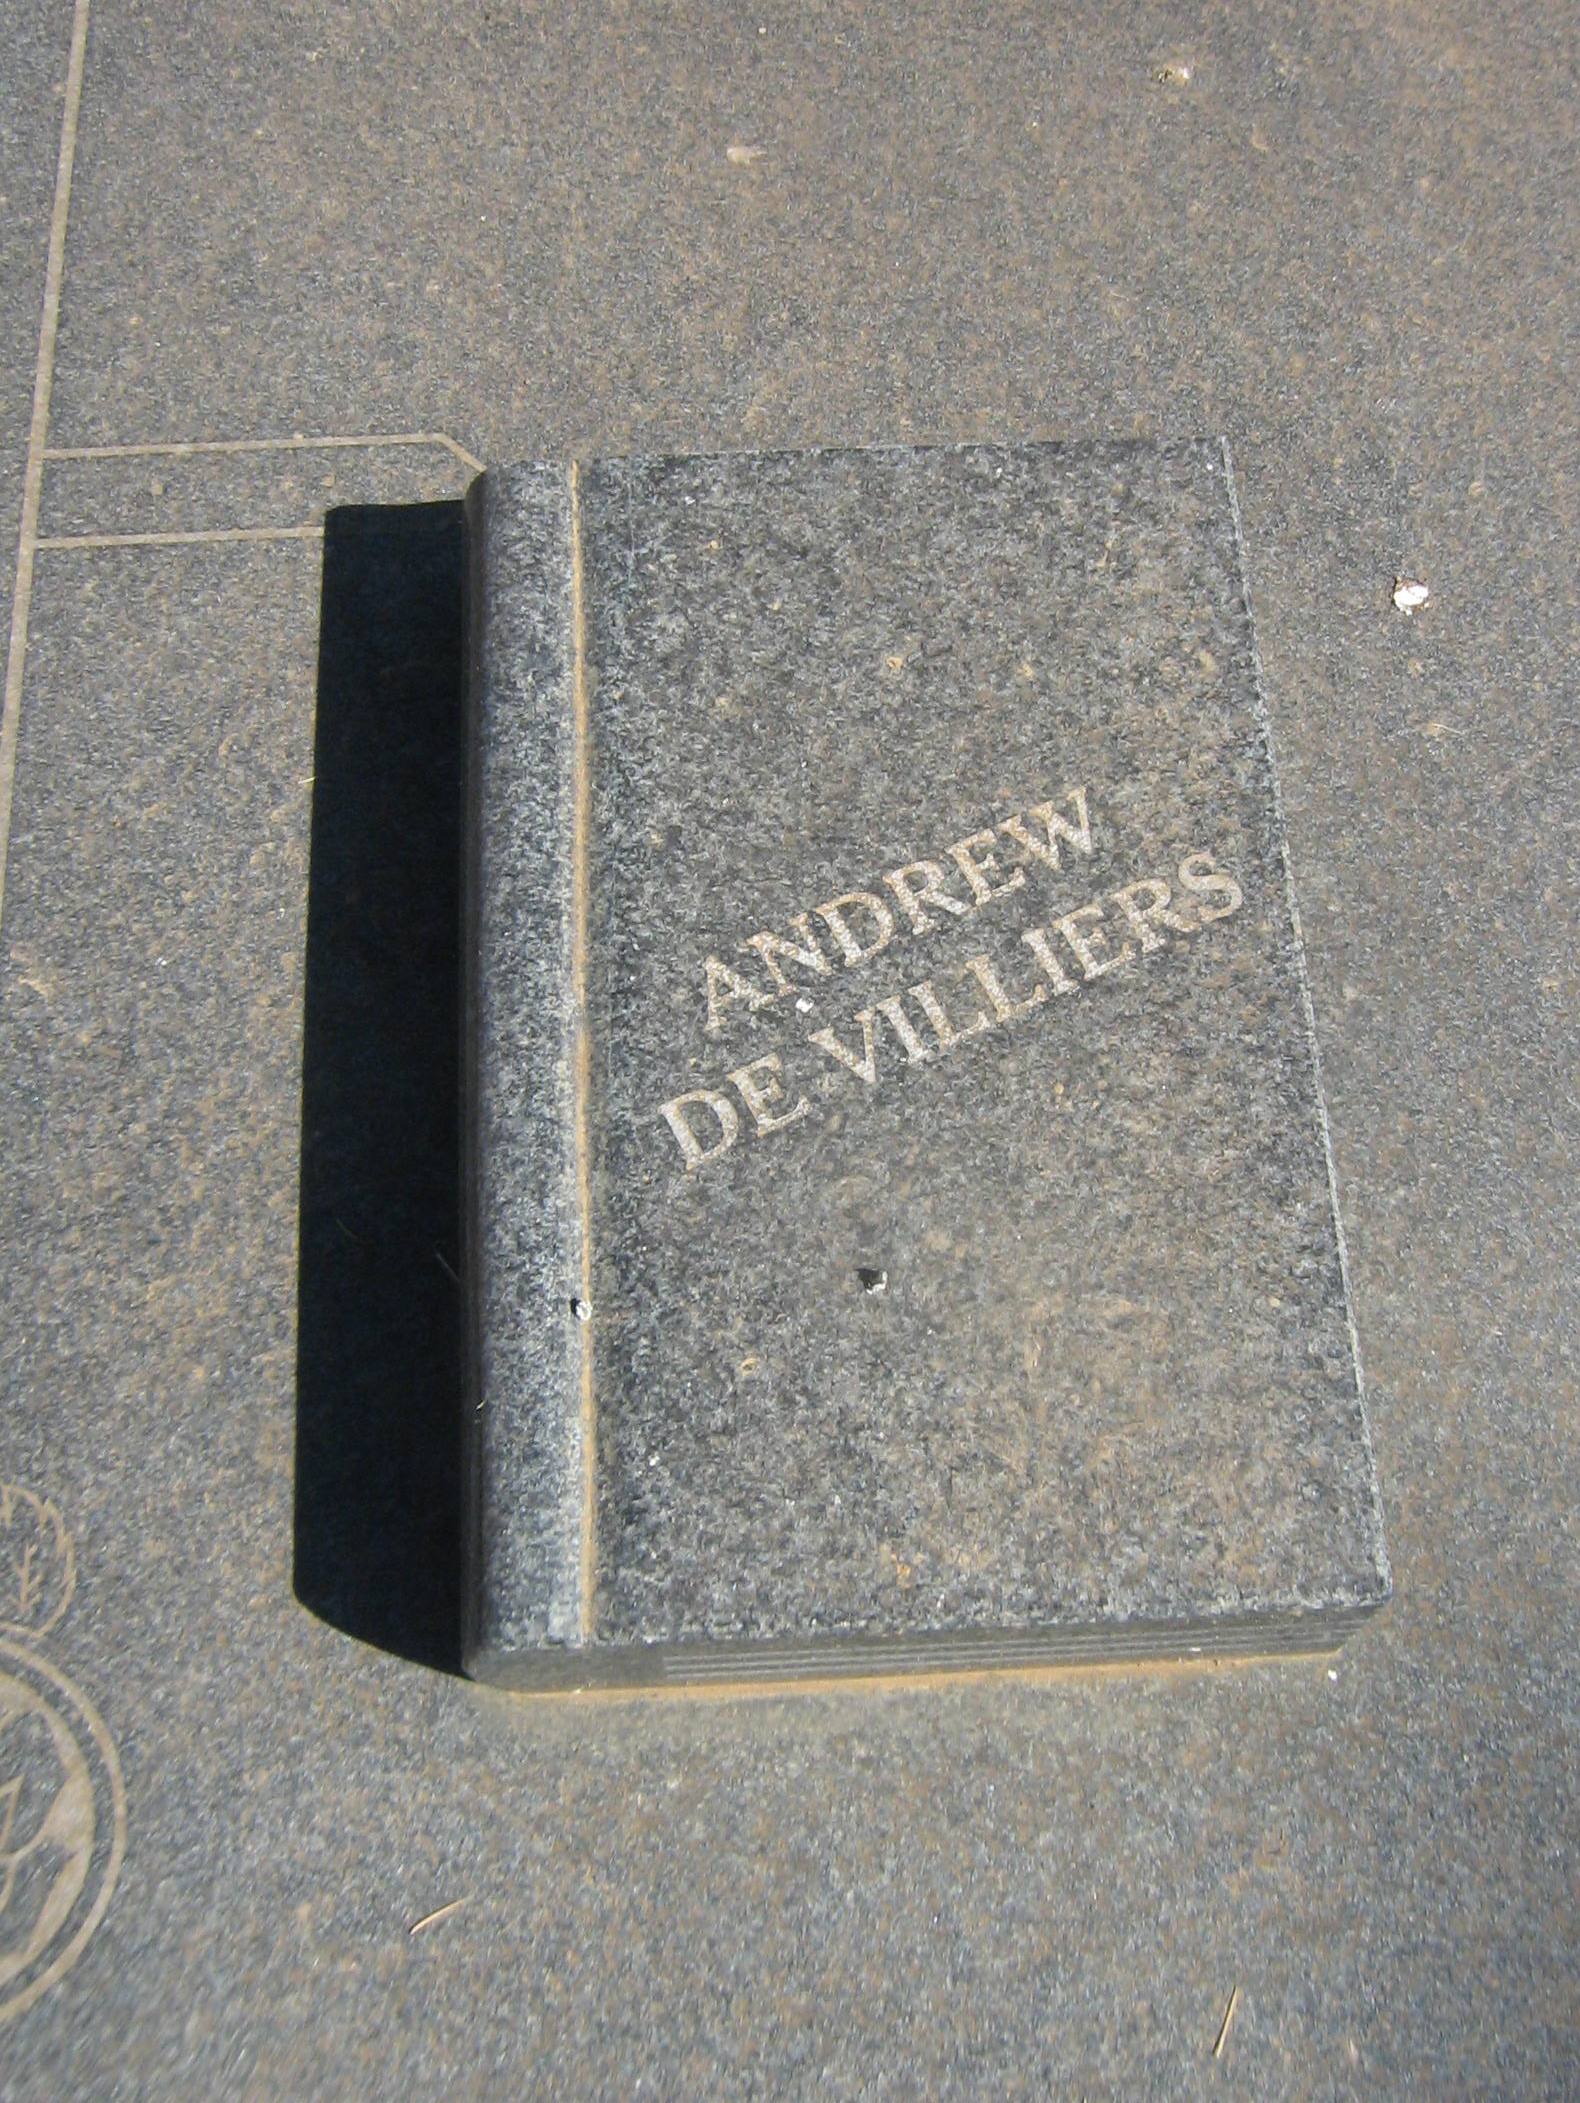 VILLIERS Andrew, de